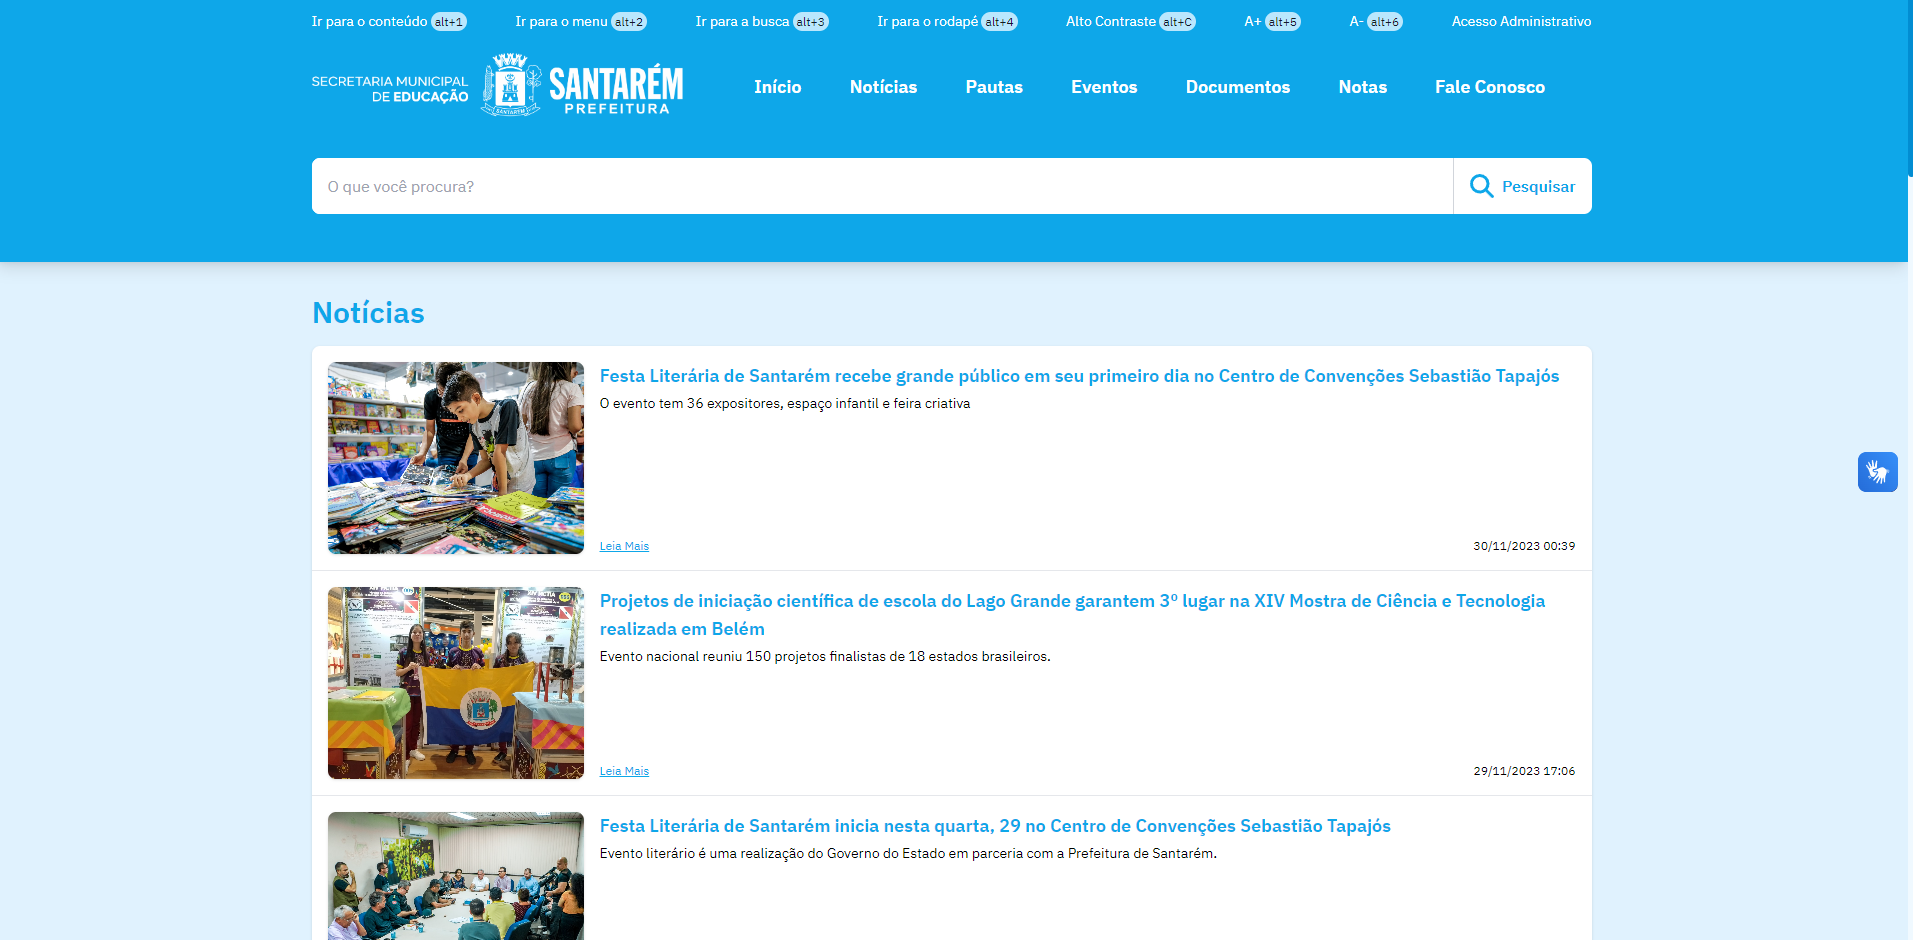 Secretaria de Educação lança página exclusiva no portal da Prefeitura, Educação, Notícias